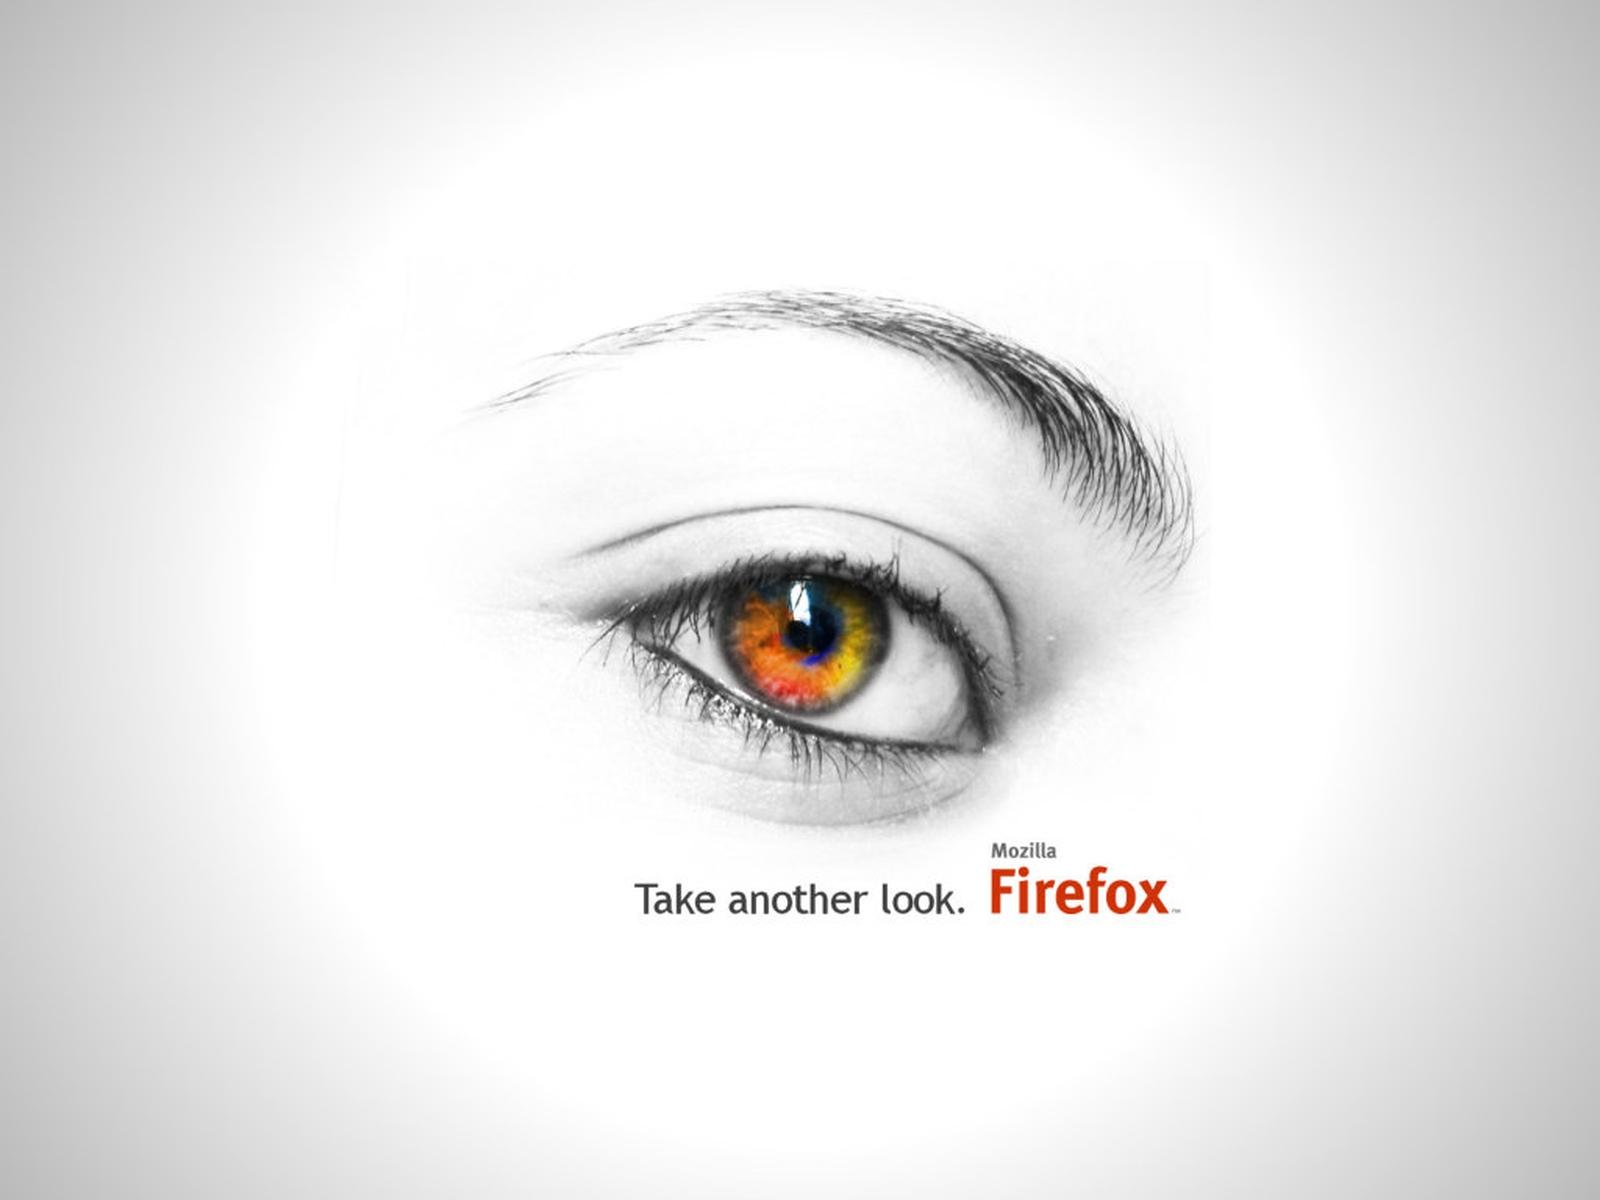 Firefox Took Another Look732841780 - Firefox Took Another Look - Took, Thunderbird, look, Firefox, Another